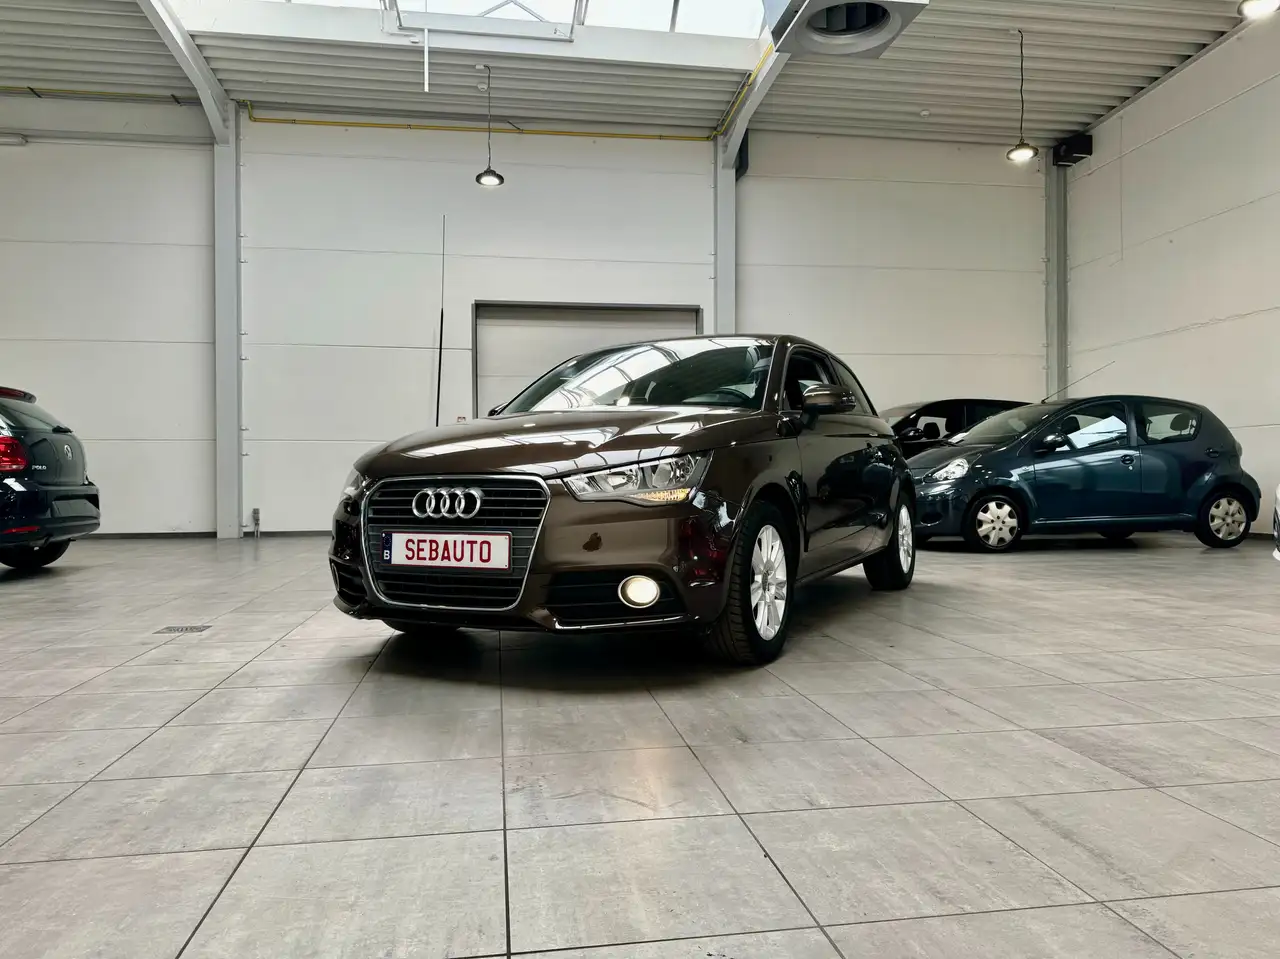 Audi A1 Berline in Bruin tweedehands in Mouscron voor € 12.000,-